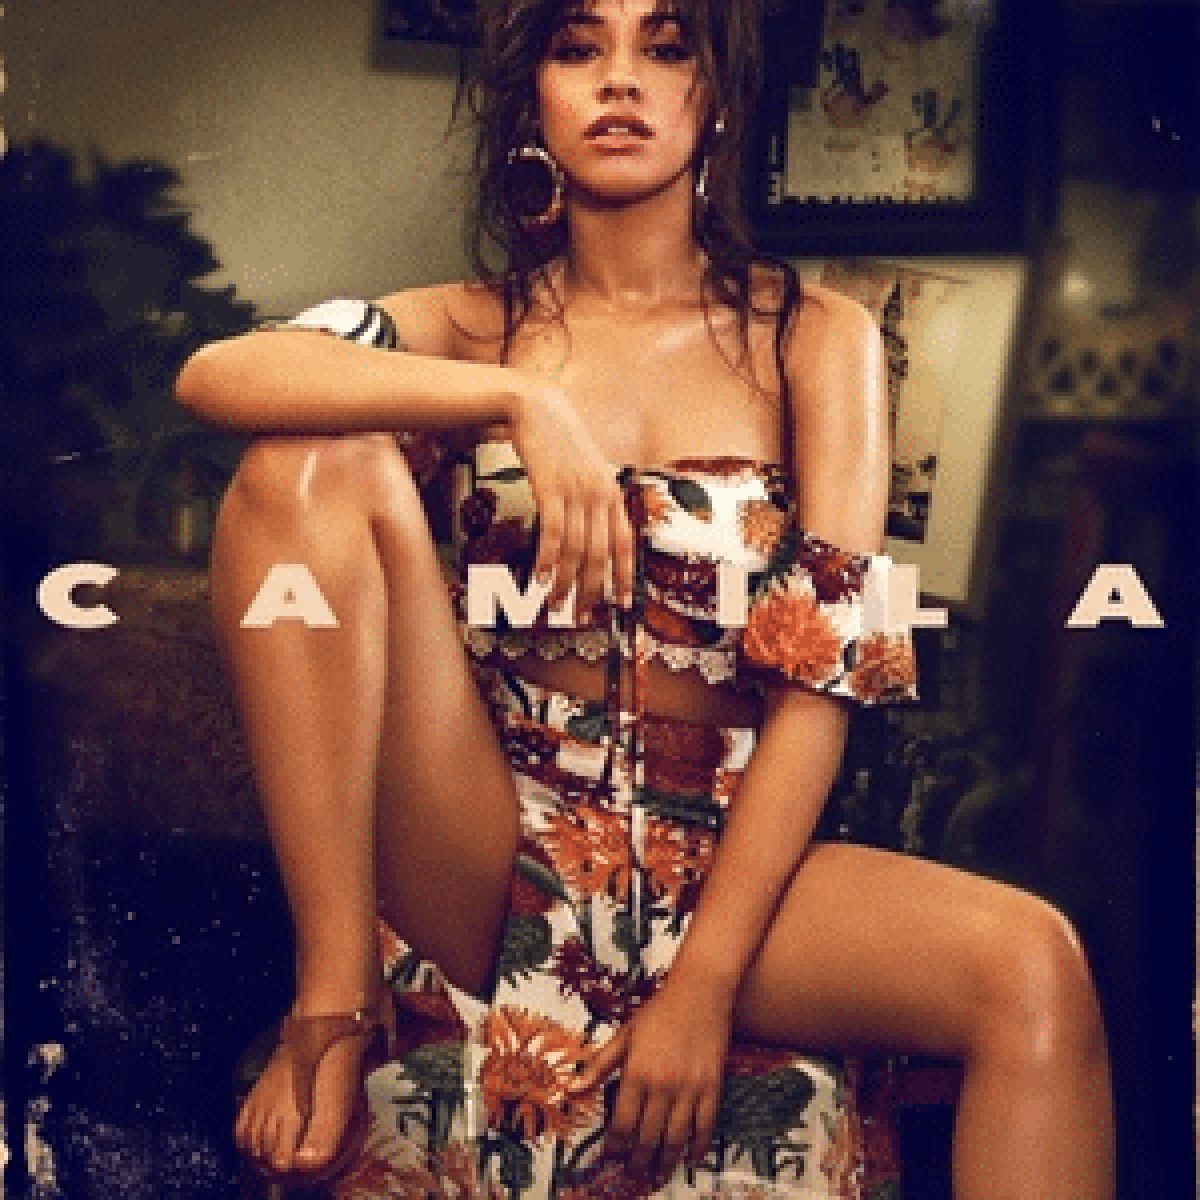 Album Review: Camila – Camila Cabello